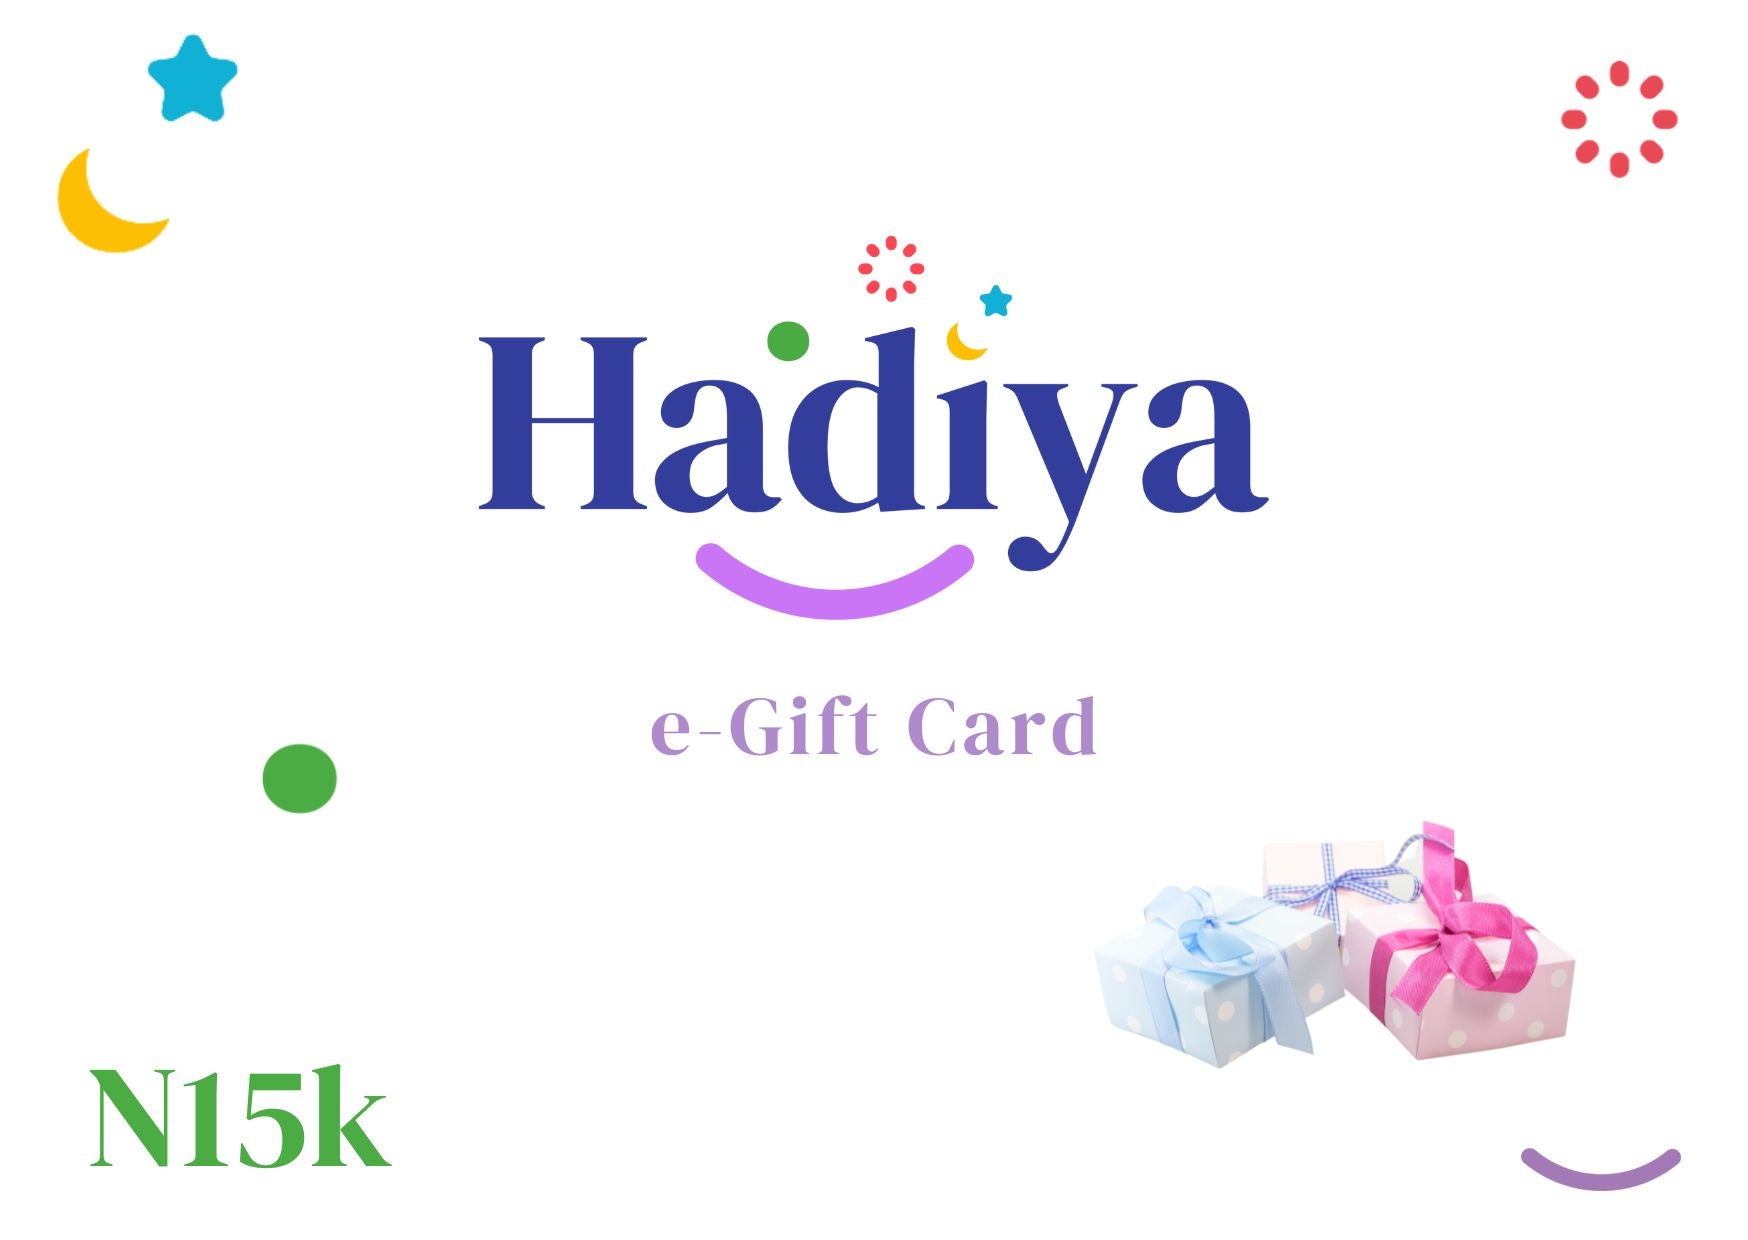 Hadiya NG e-Gift Card